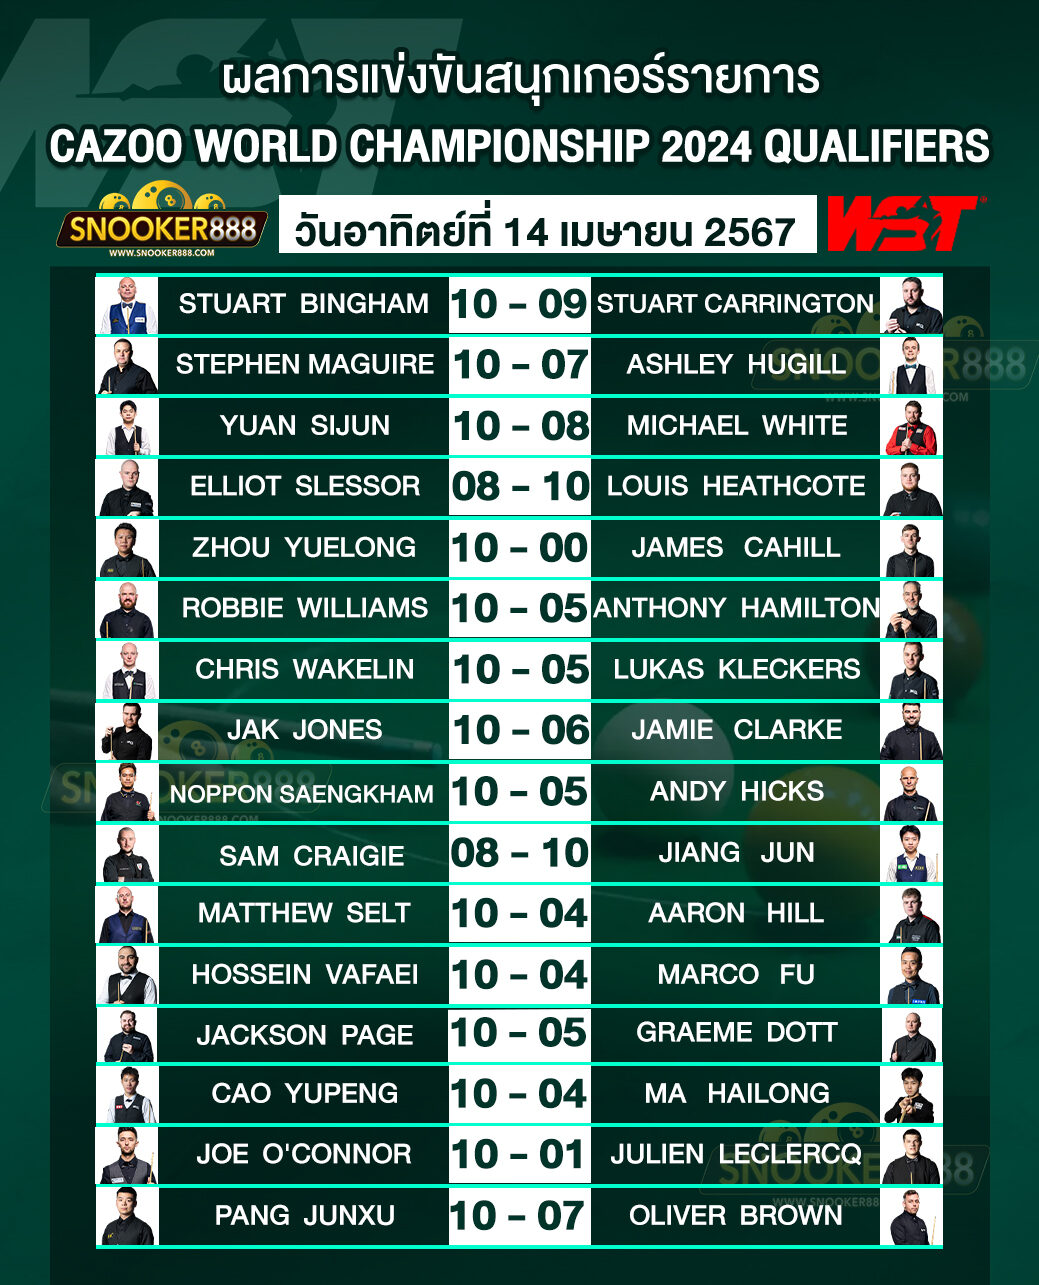 ผลการแข่งขันสนุกเกอร์ CAZOO WORLD CHAMPIONSHIP 2024 QUALIFIERS วันที่ 14 เม.ย. 67